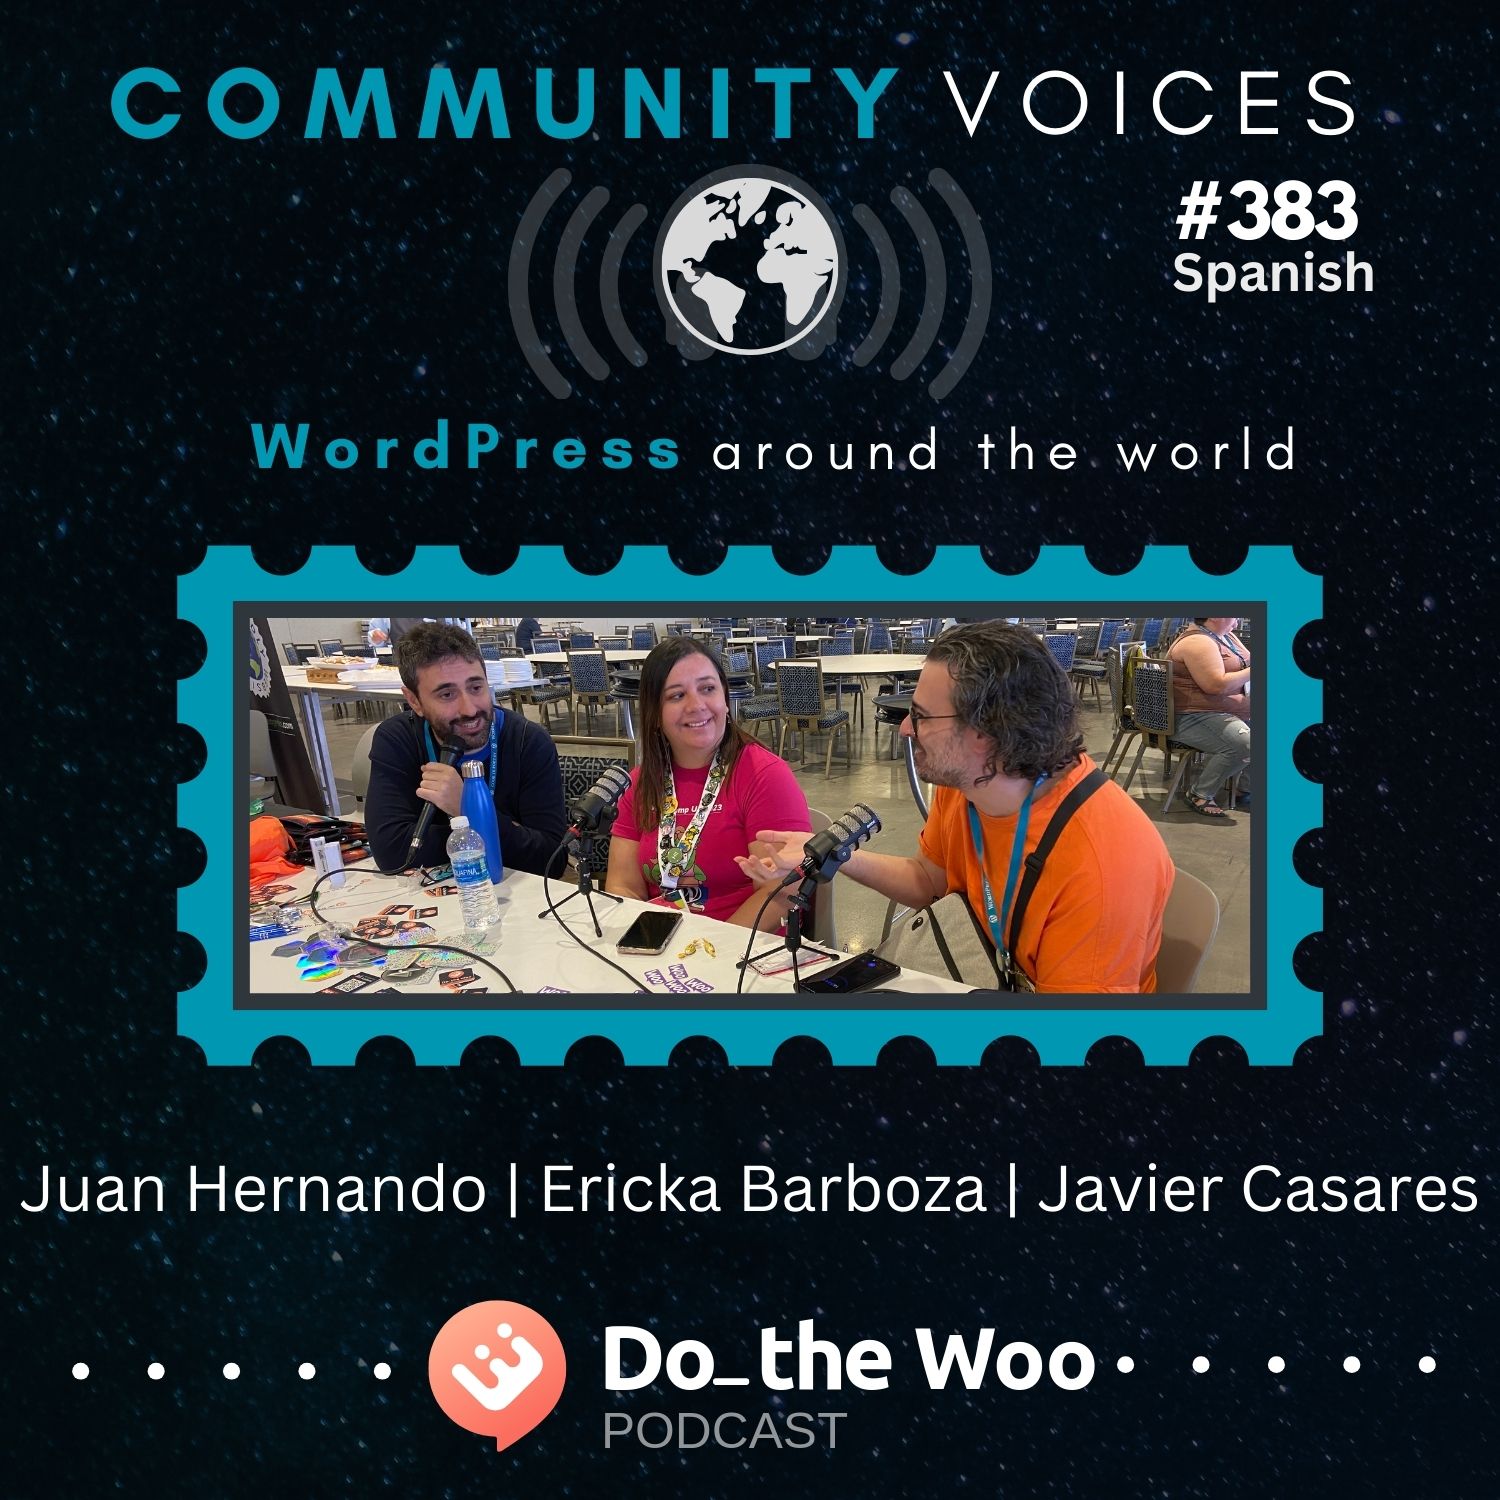 La Comunidad de WordPress en Español / WordPress Community in Spanish